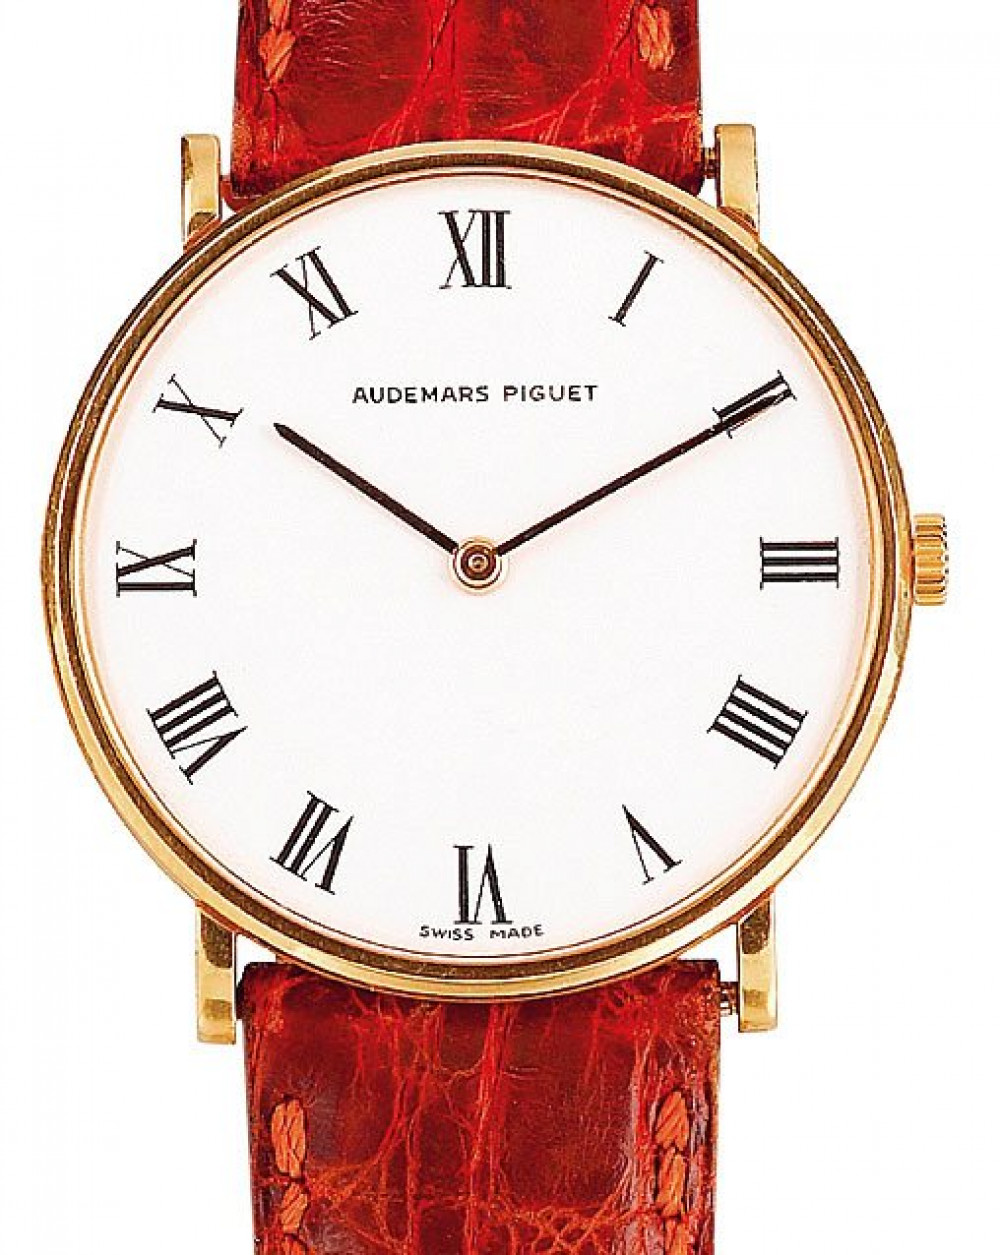 Zegarek firmy Audemars Piguet, model flache Handaufzugsuhr von 1980